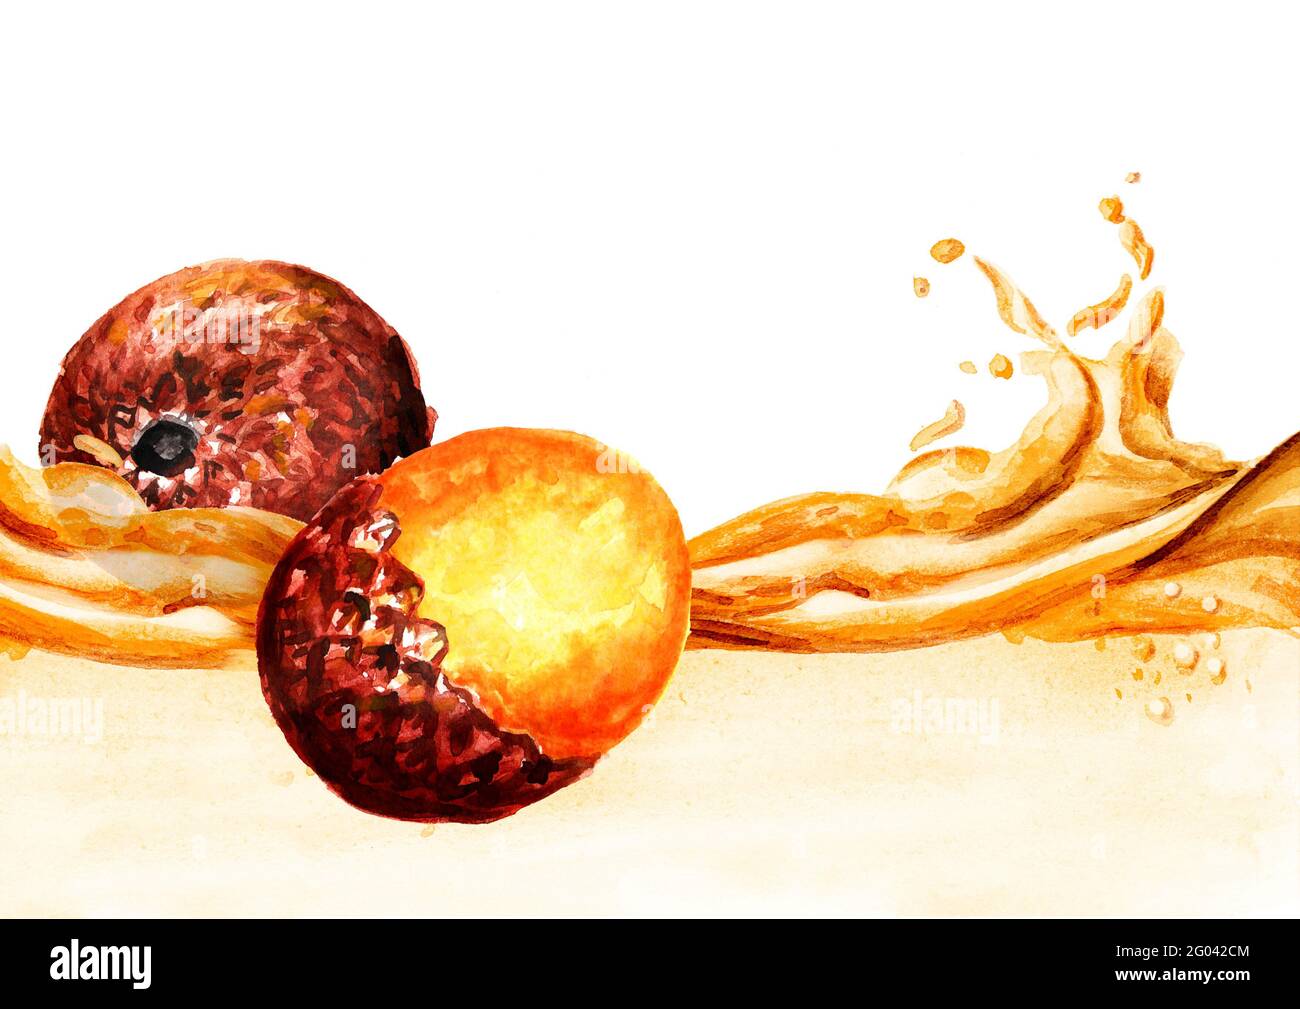 Vague exotique d'huile de fruits Buriti. Illustration aquarelle dessinée à la main, isolée sur fond blanc Banque D'Images